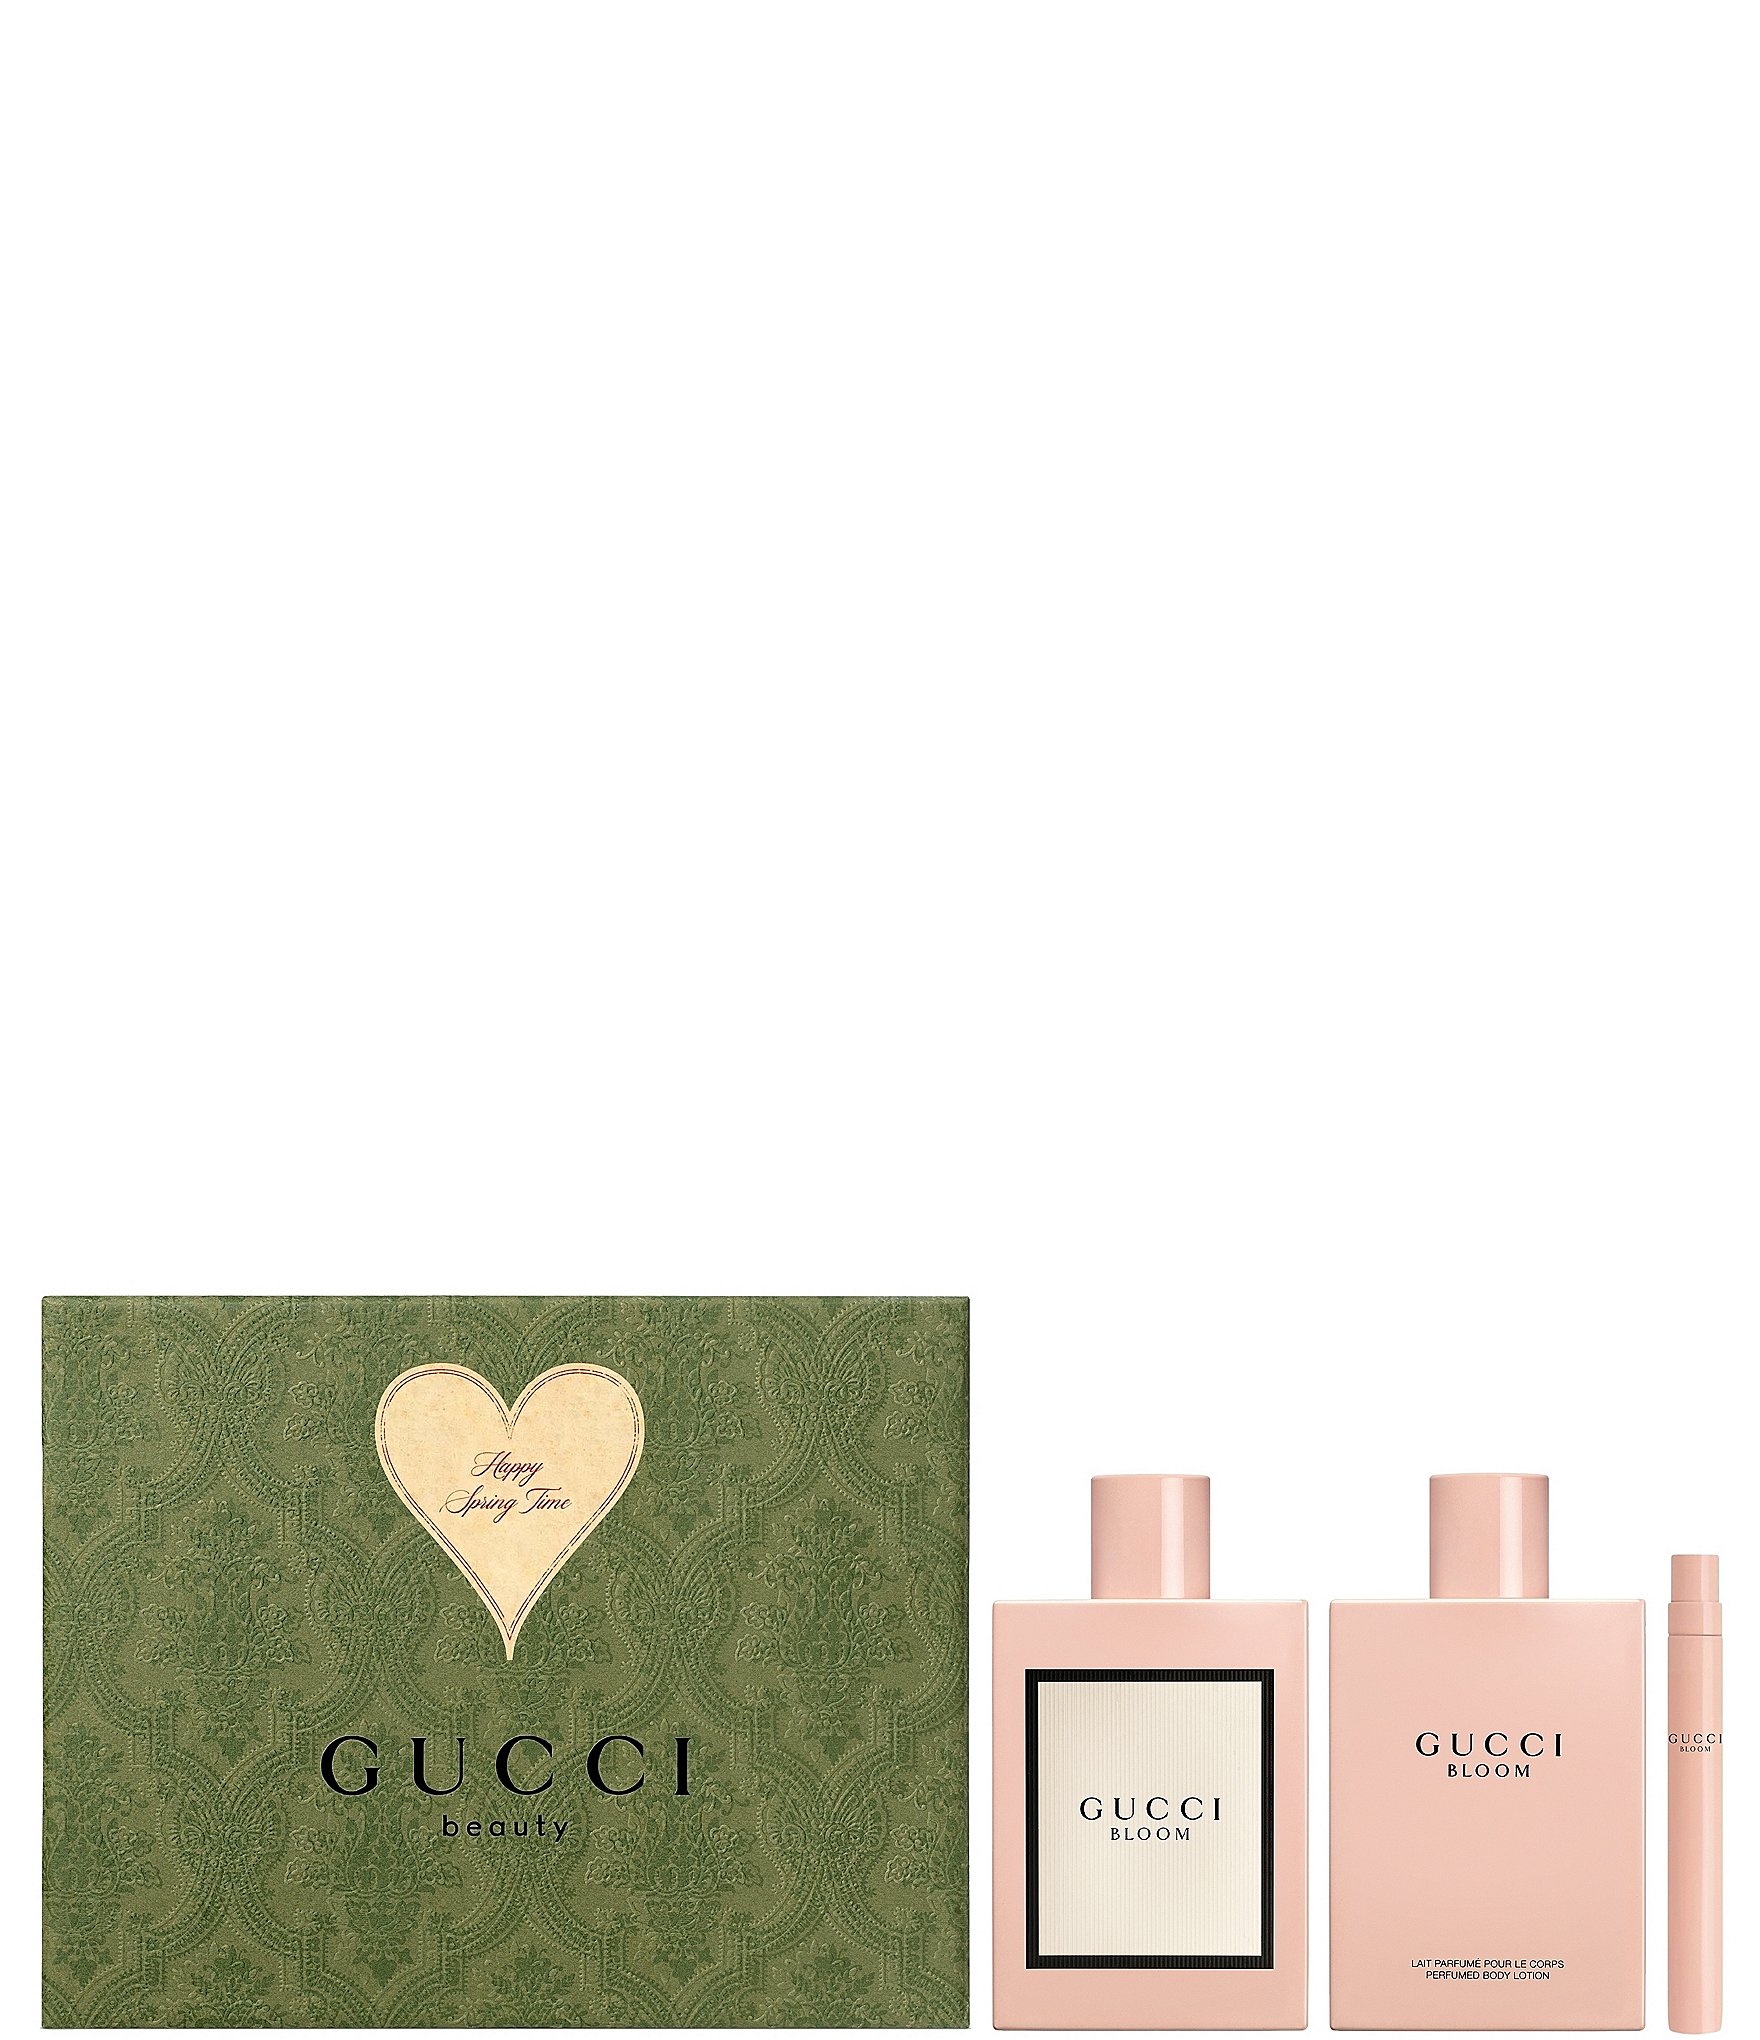 Gucci Bloom gift set in eau de parfum